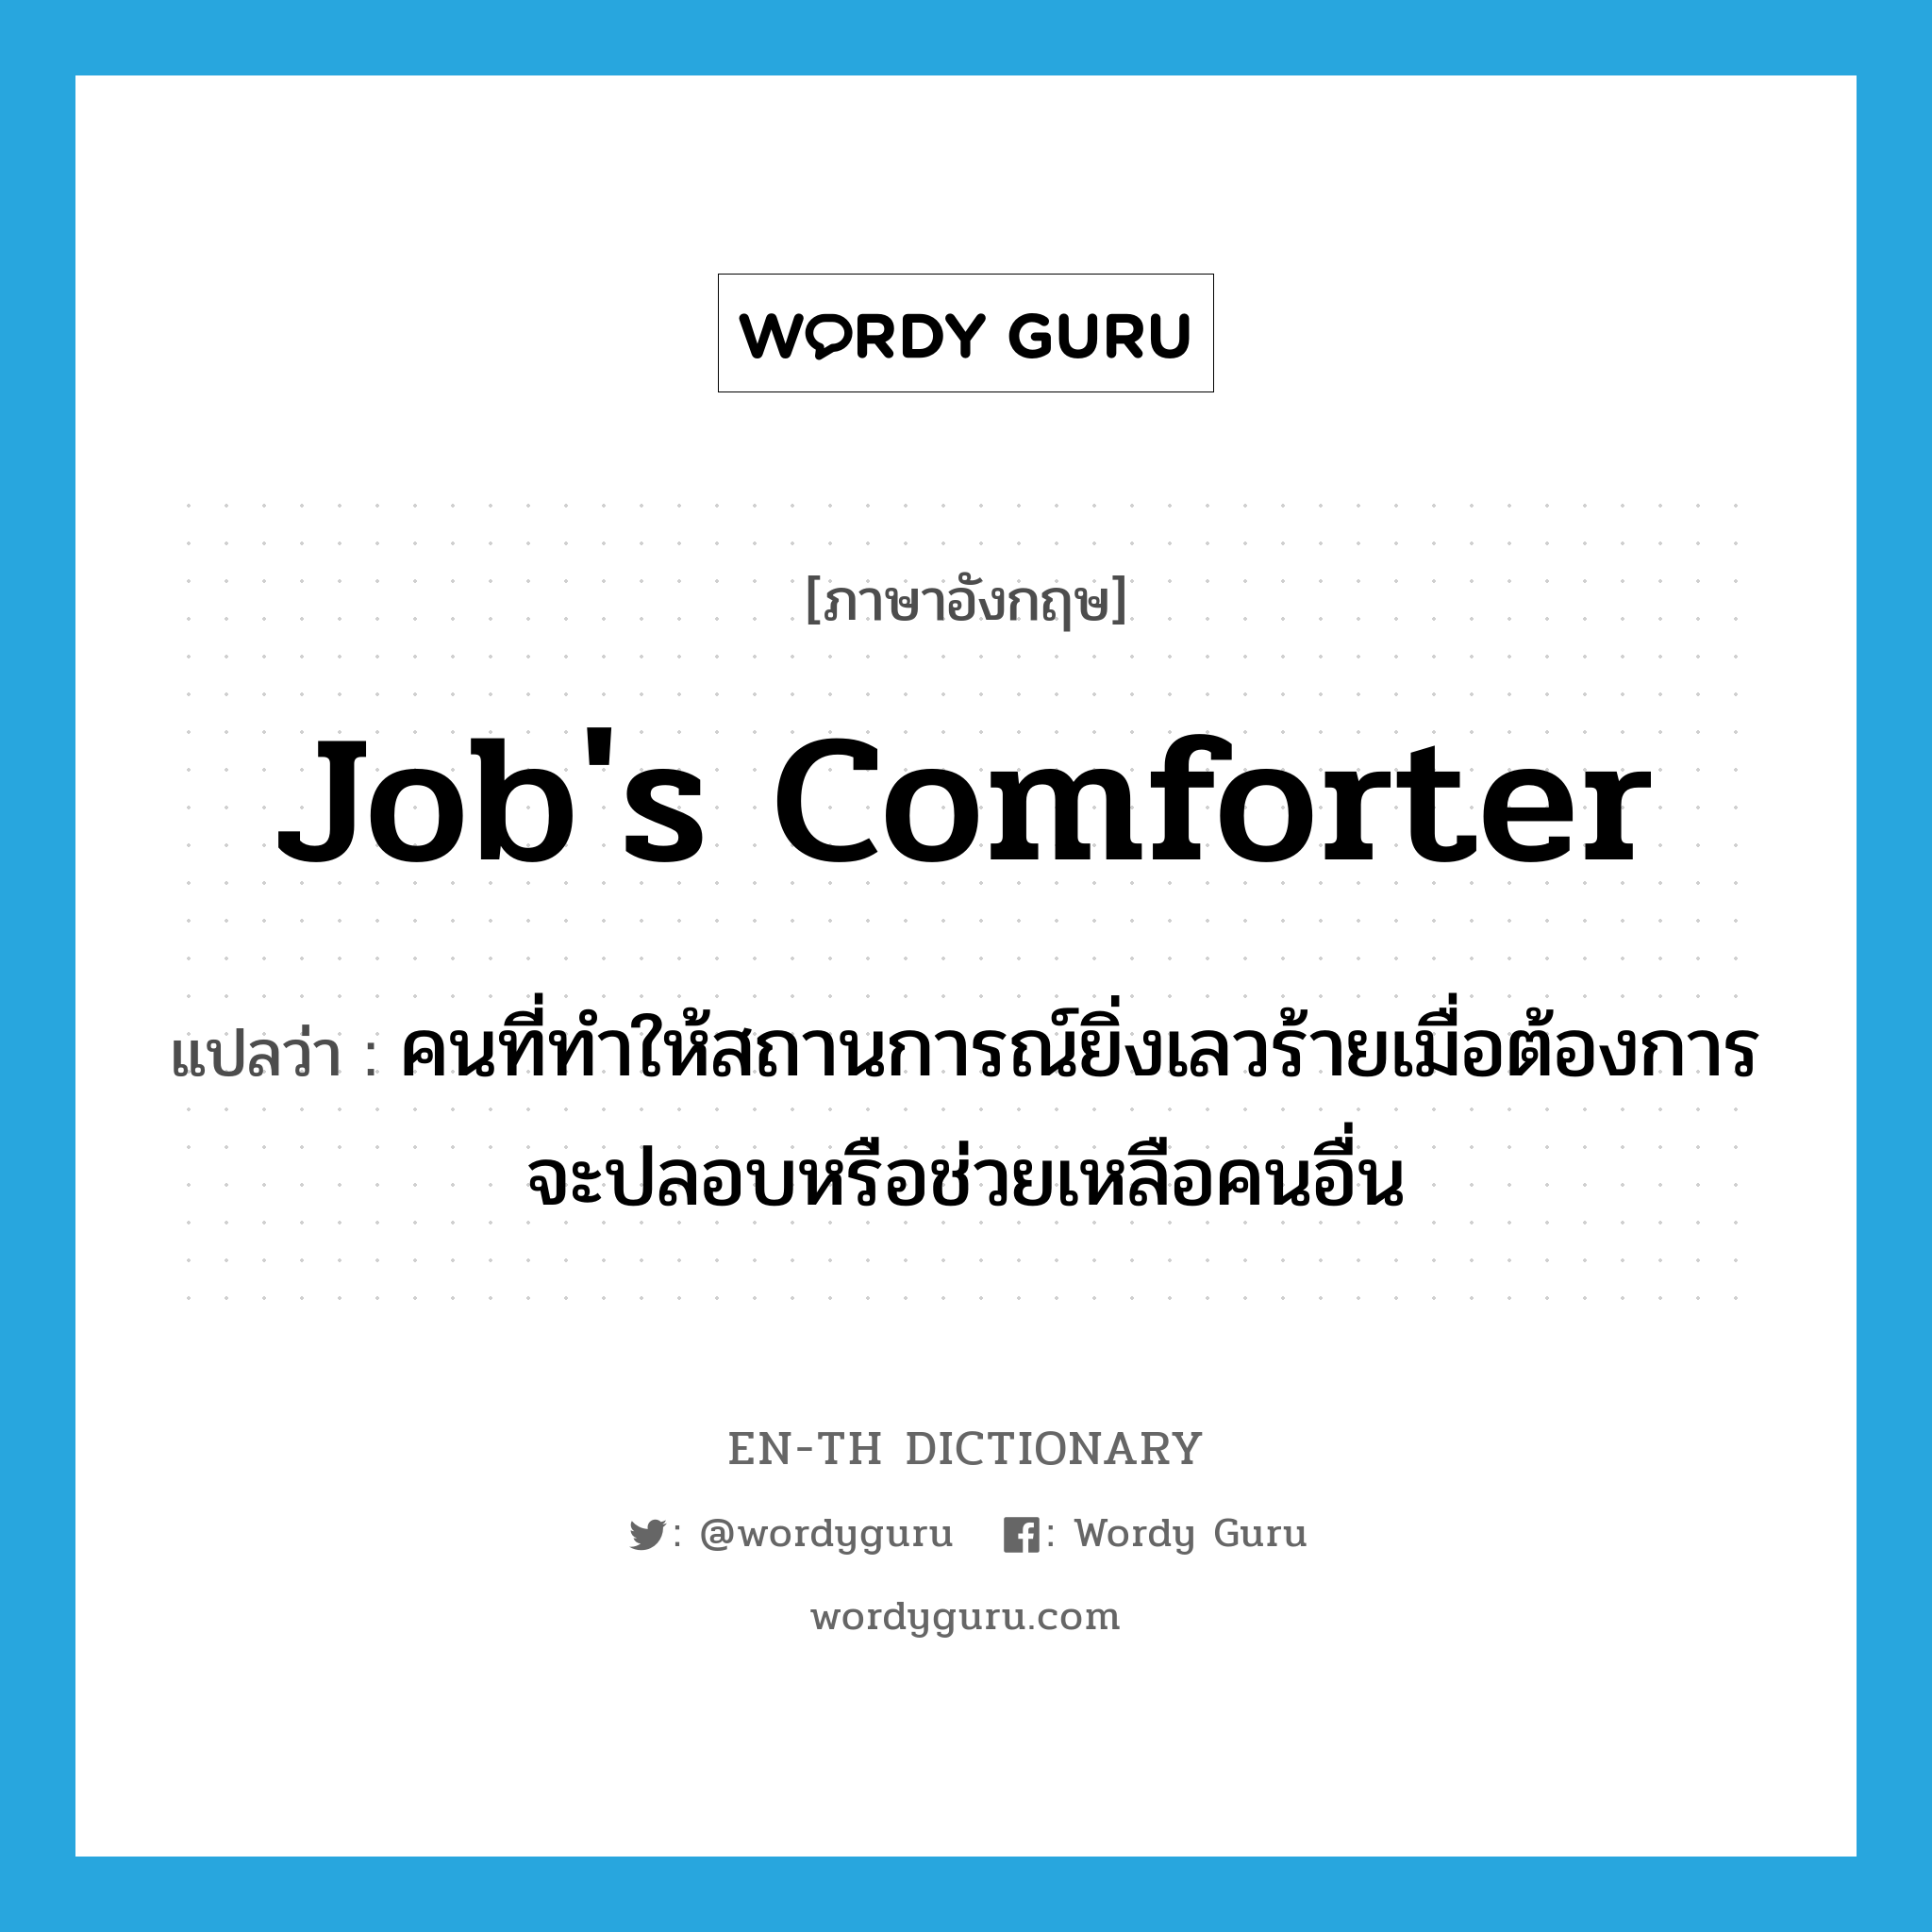 Job's comforter แปลว่า?, คำศัพท์ภาษาอังกฤษ Job's comforter แปลว่า คนที่ทำให้สถานการณ์ยิ่งเลวร้ายเมื่อต้องการจะปลอบหรือช่วยเหลือคนอื่น ประเภท IDM หมวด IDM